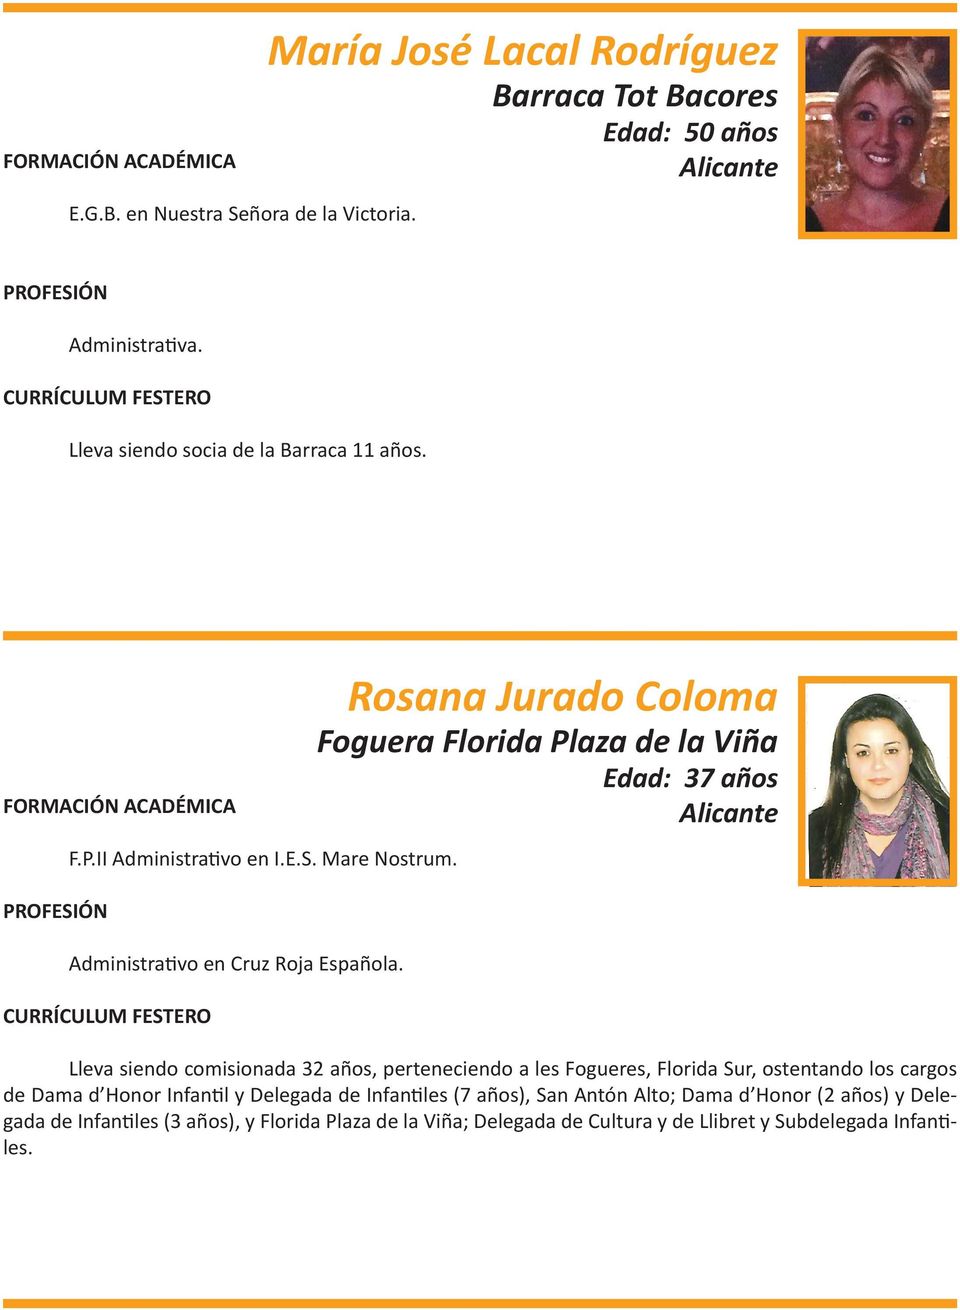 Rosana Jurado Coloma Foguera Florida Plaza de la Viña Edad: 37 años Lleva siendo comisionada 32 años, perteneciendo a les Fogueres, Florida Sur, ostentando